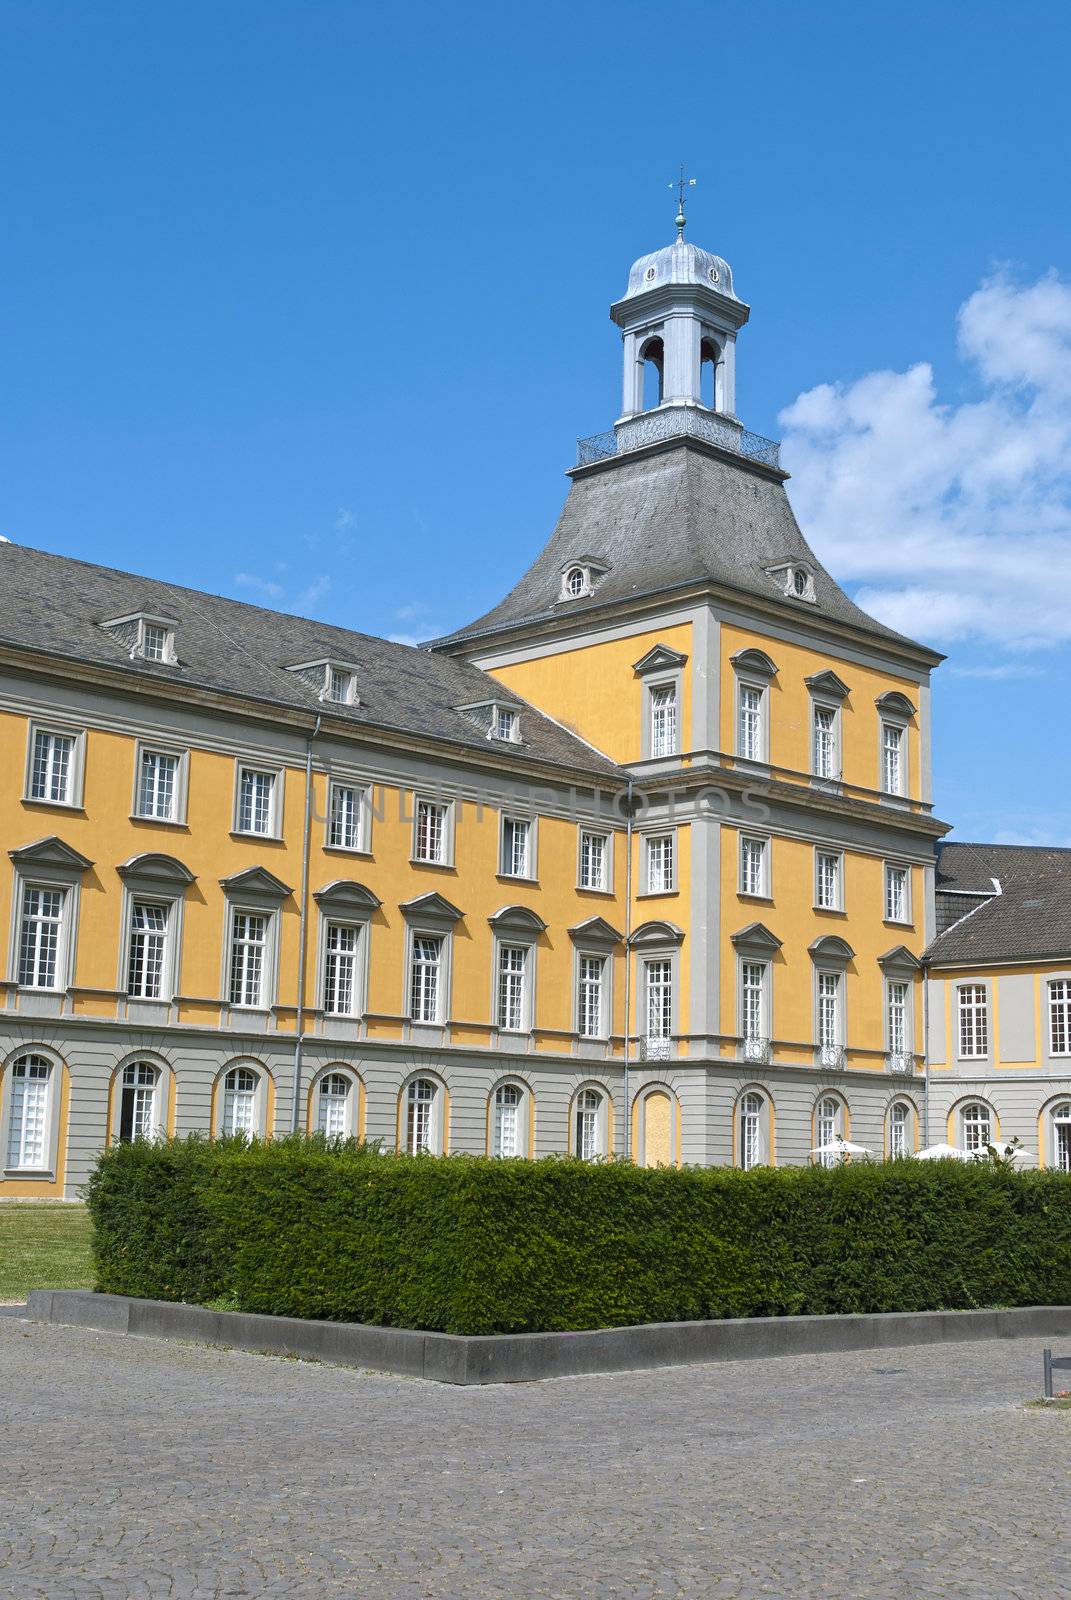 University in the center of Bonn, Germany